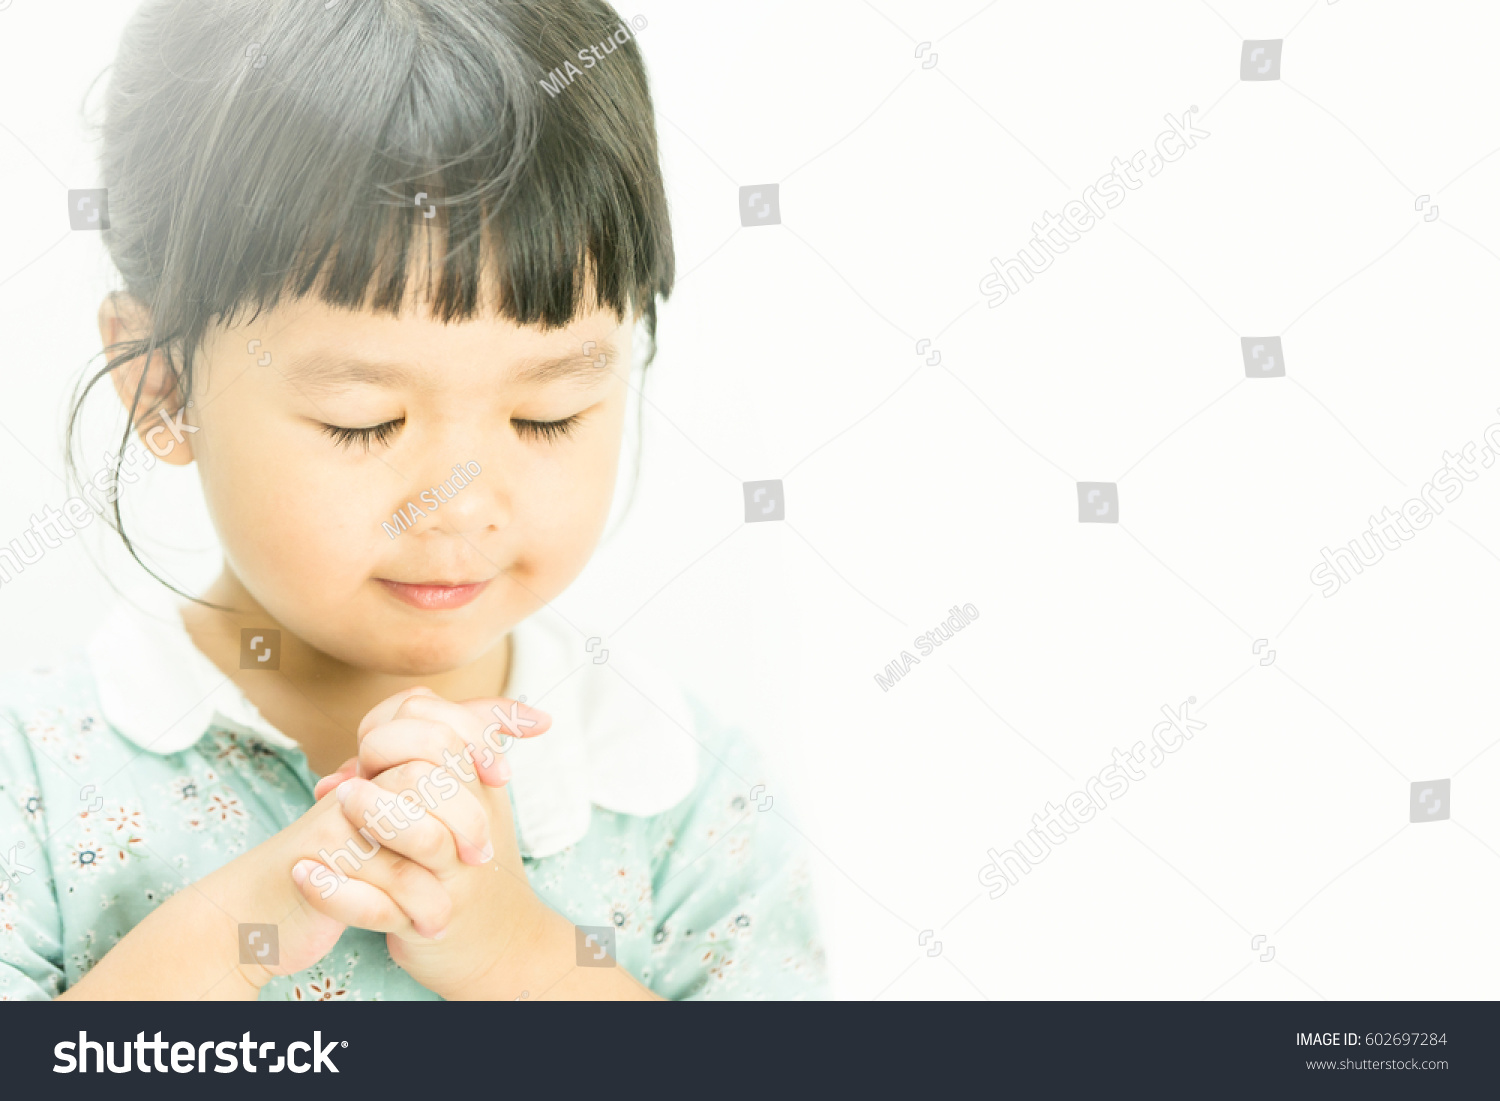 stock-photo-little-girl-praying-in-the-morning-little-asian-girl-hand-praying-hands-folded-in-prayer-concept-602697284.jpg